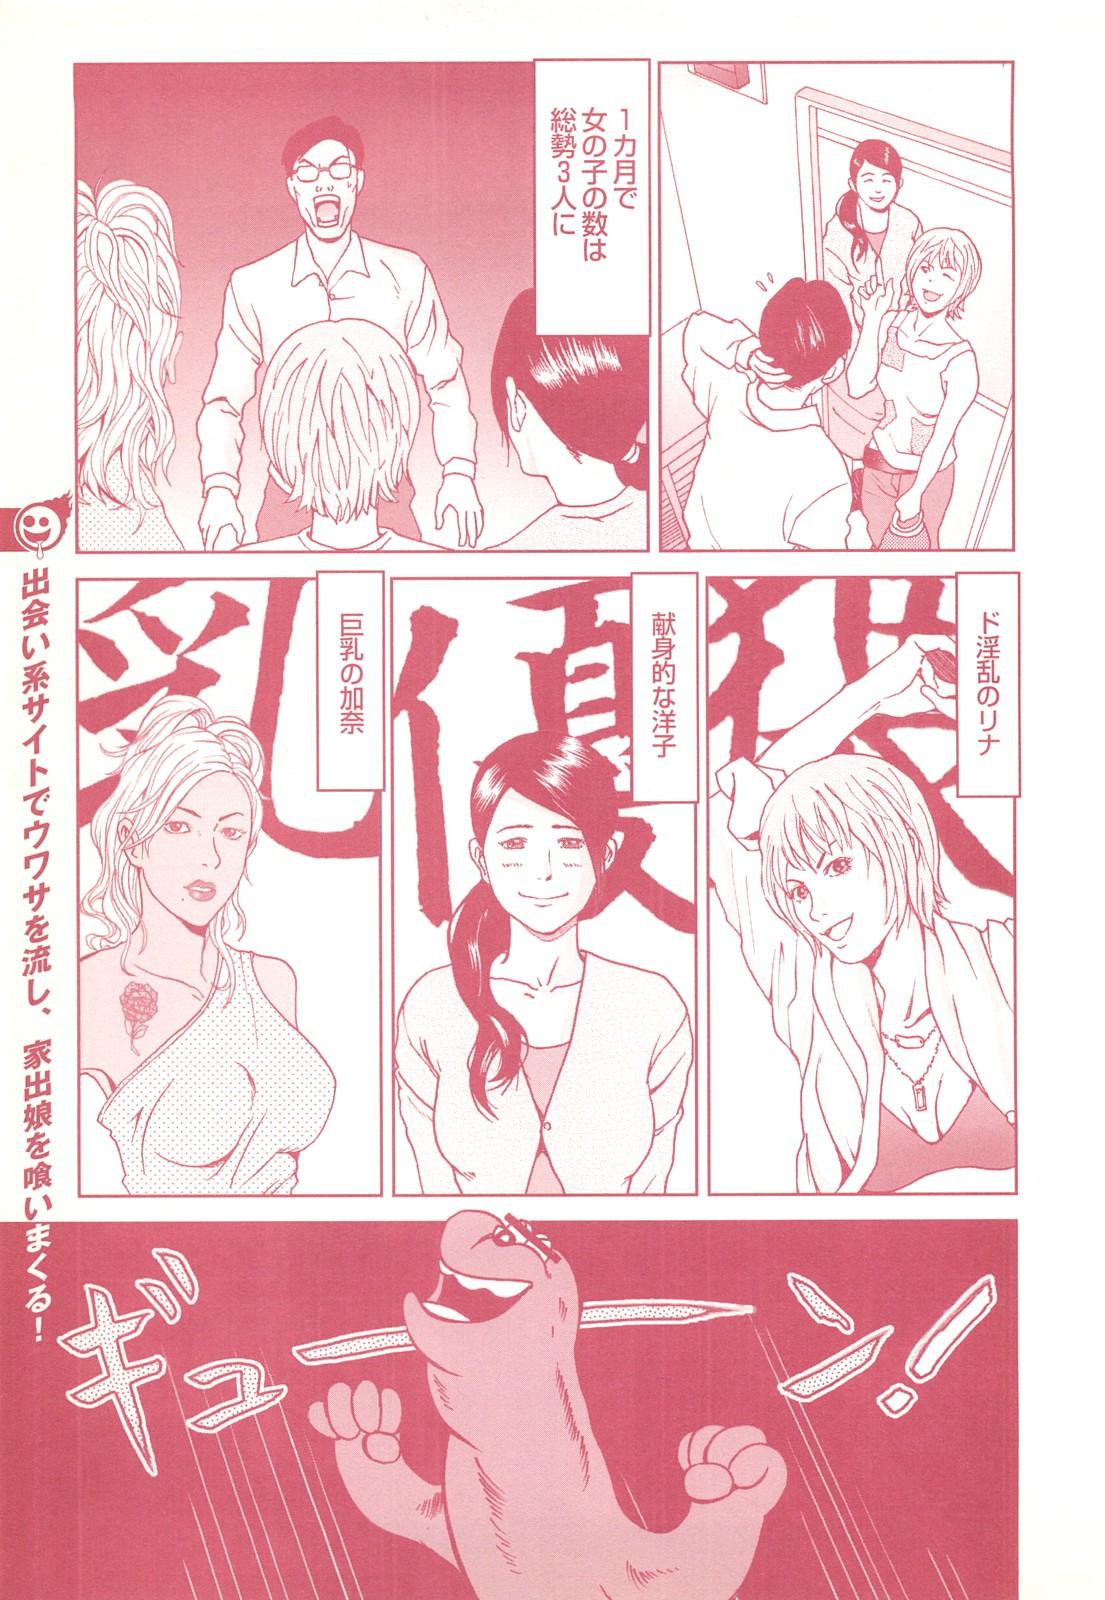 コミック裏モノJAPAN Vol.18 今井のりたつスペシャル号 102